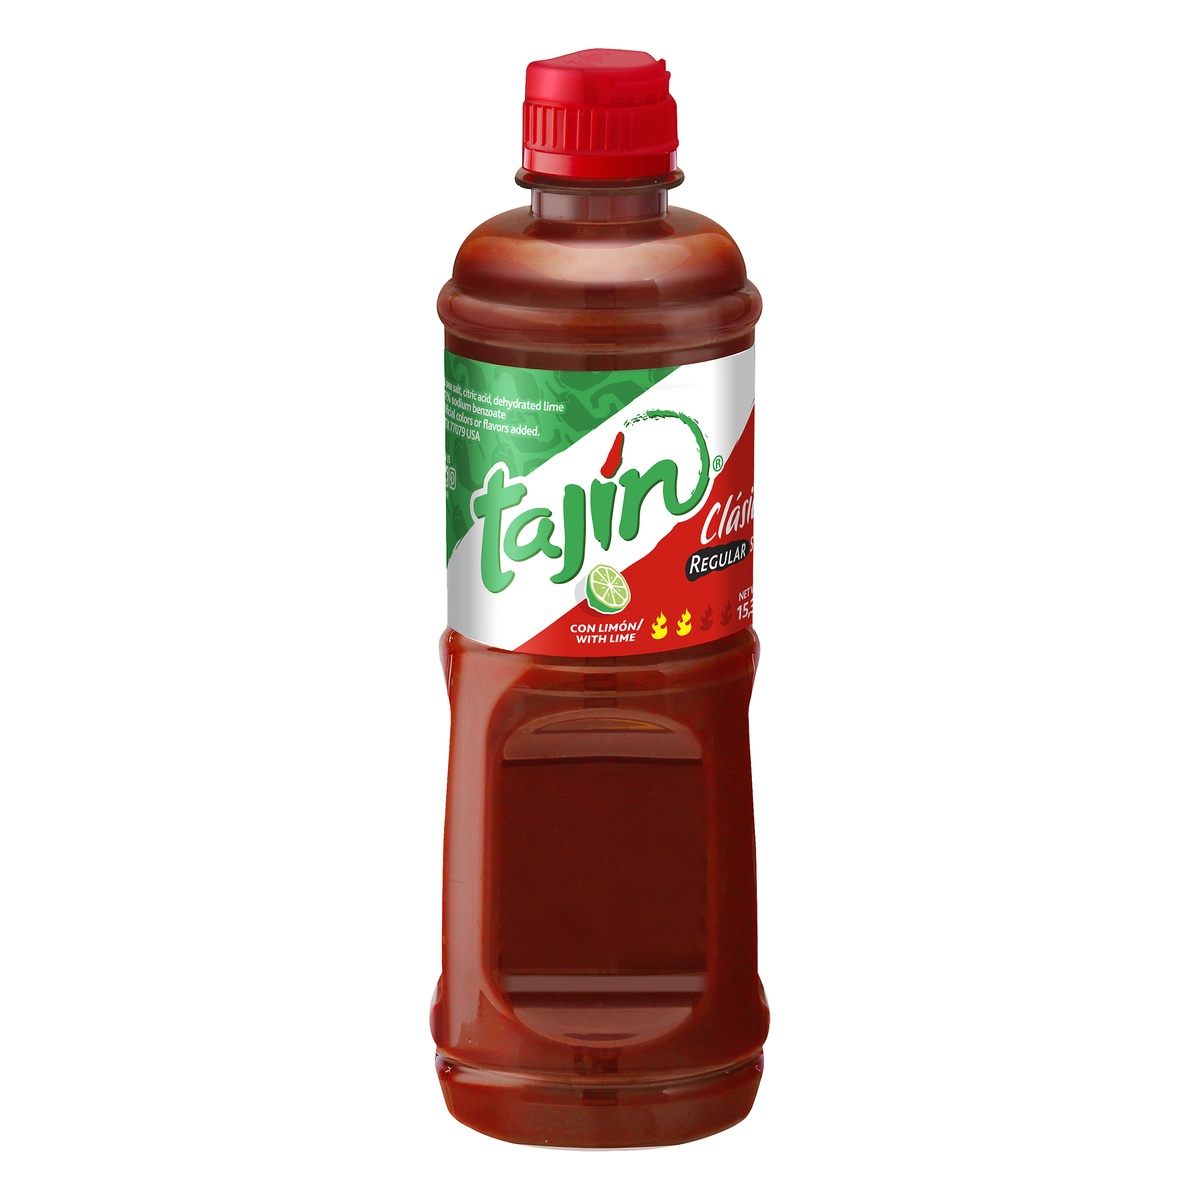 slide 1 of 1, Tajin Clasico Regular Snack Sauce, 15.38 fl oz